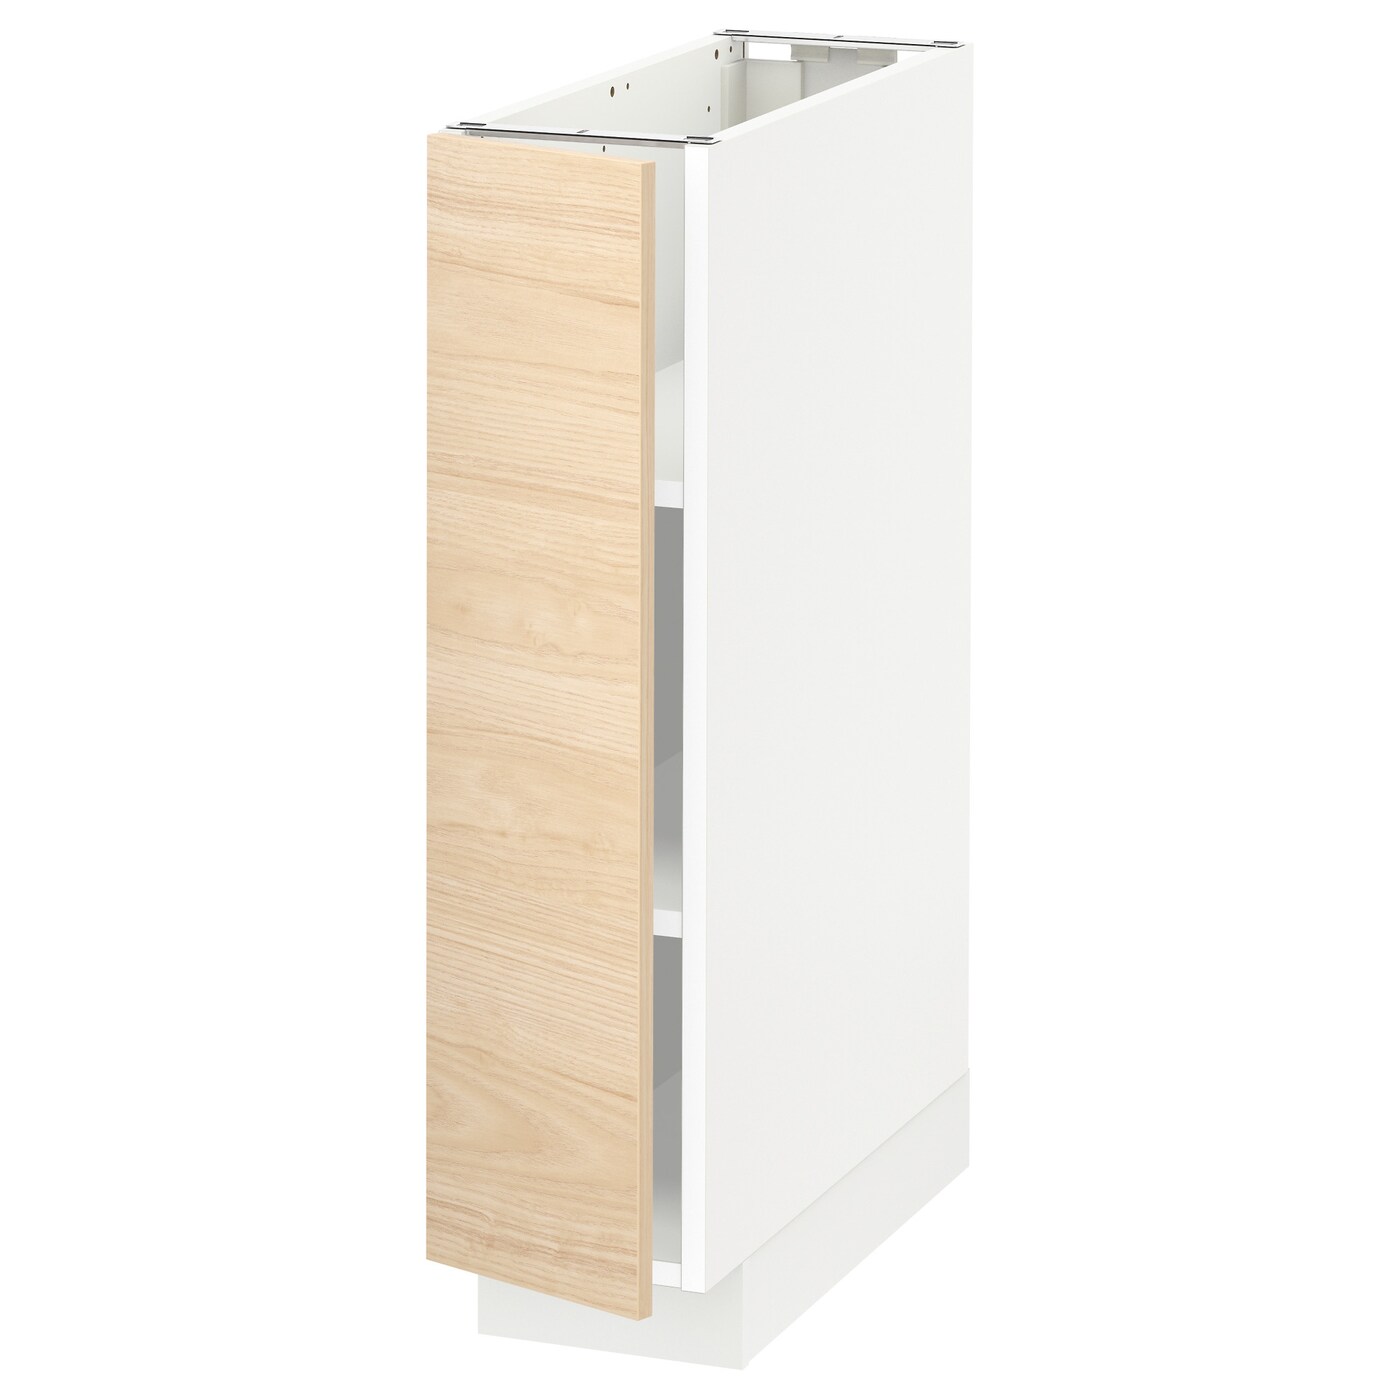 Напольный шкаф - METOD IKEA/ МЕТОД ИКЕА,  88х20 см, белый/под беленый дуб